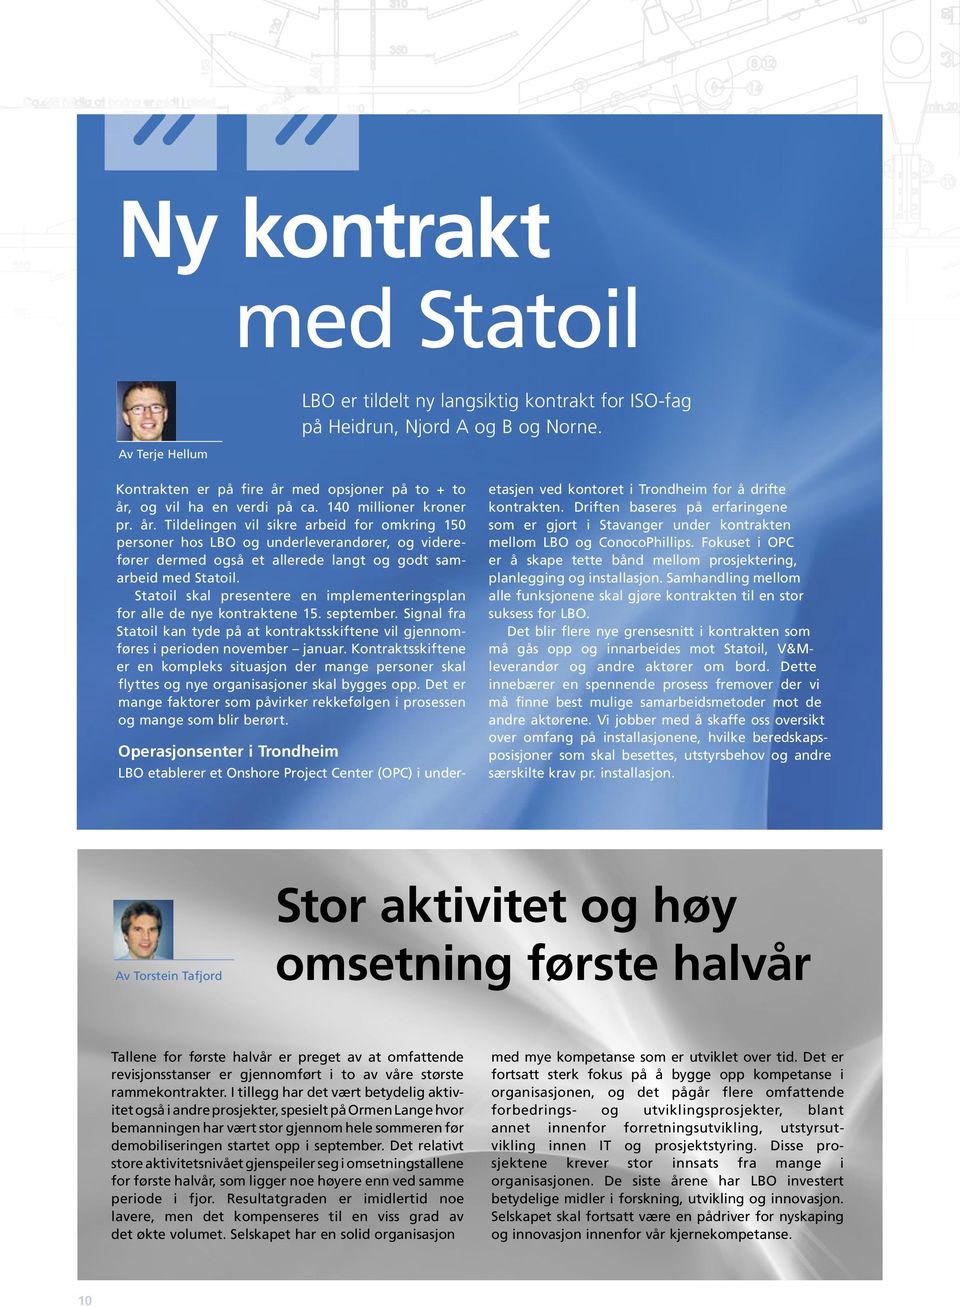 Statoil skal presentere en implementeringsplan for alle de nye kontraktene 15. september. Signal fra Statoil kan tyde på at kontraktsskiftene vil gjennomføres i perioden november januar.